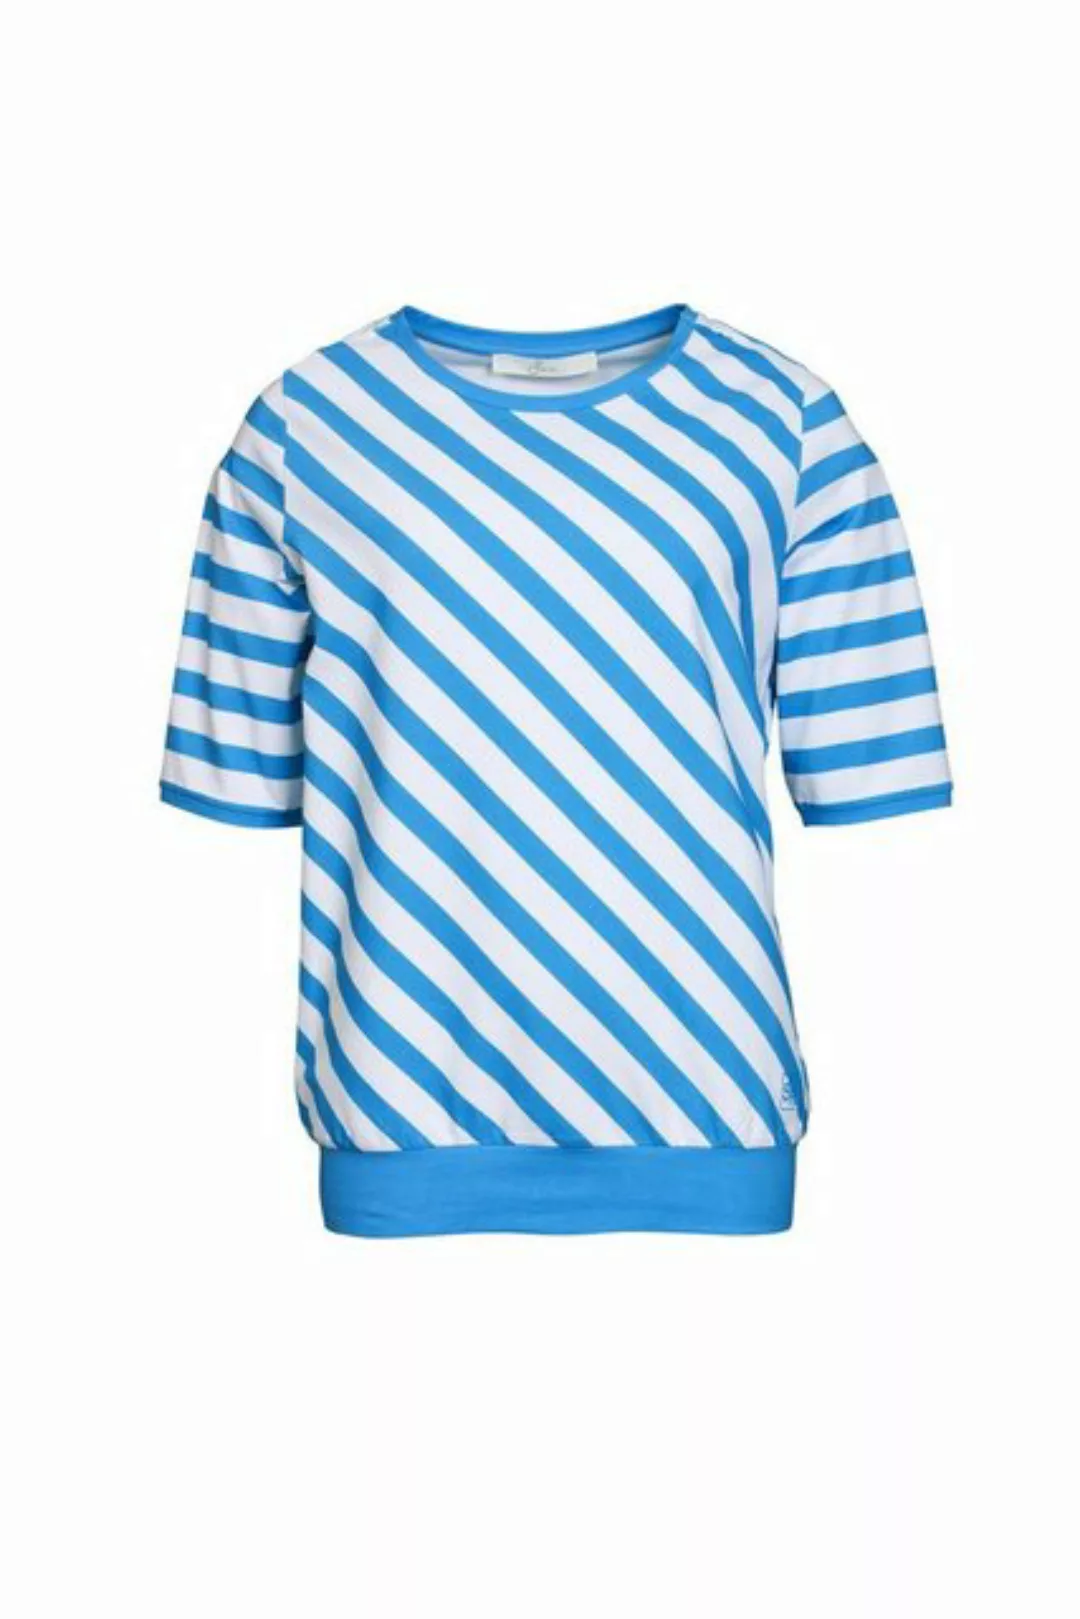 SER T-Shirt Shirt, Diagonal Ringel W4240112 auch in großen Größen günstig online kaufen